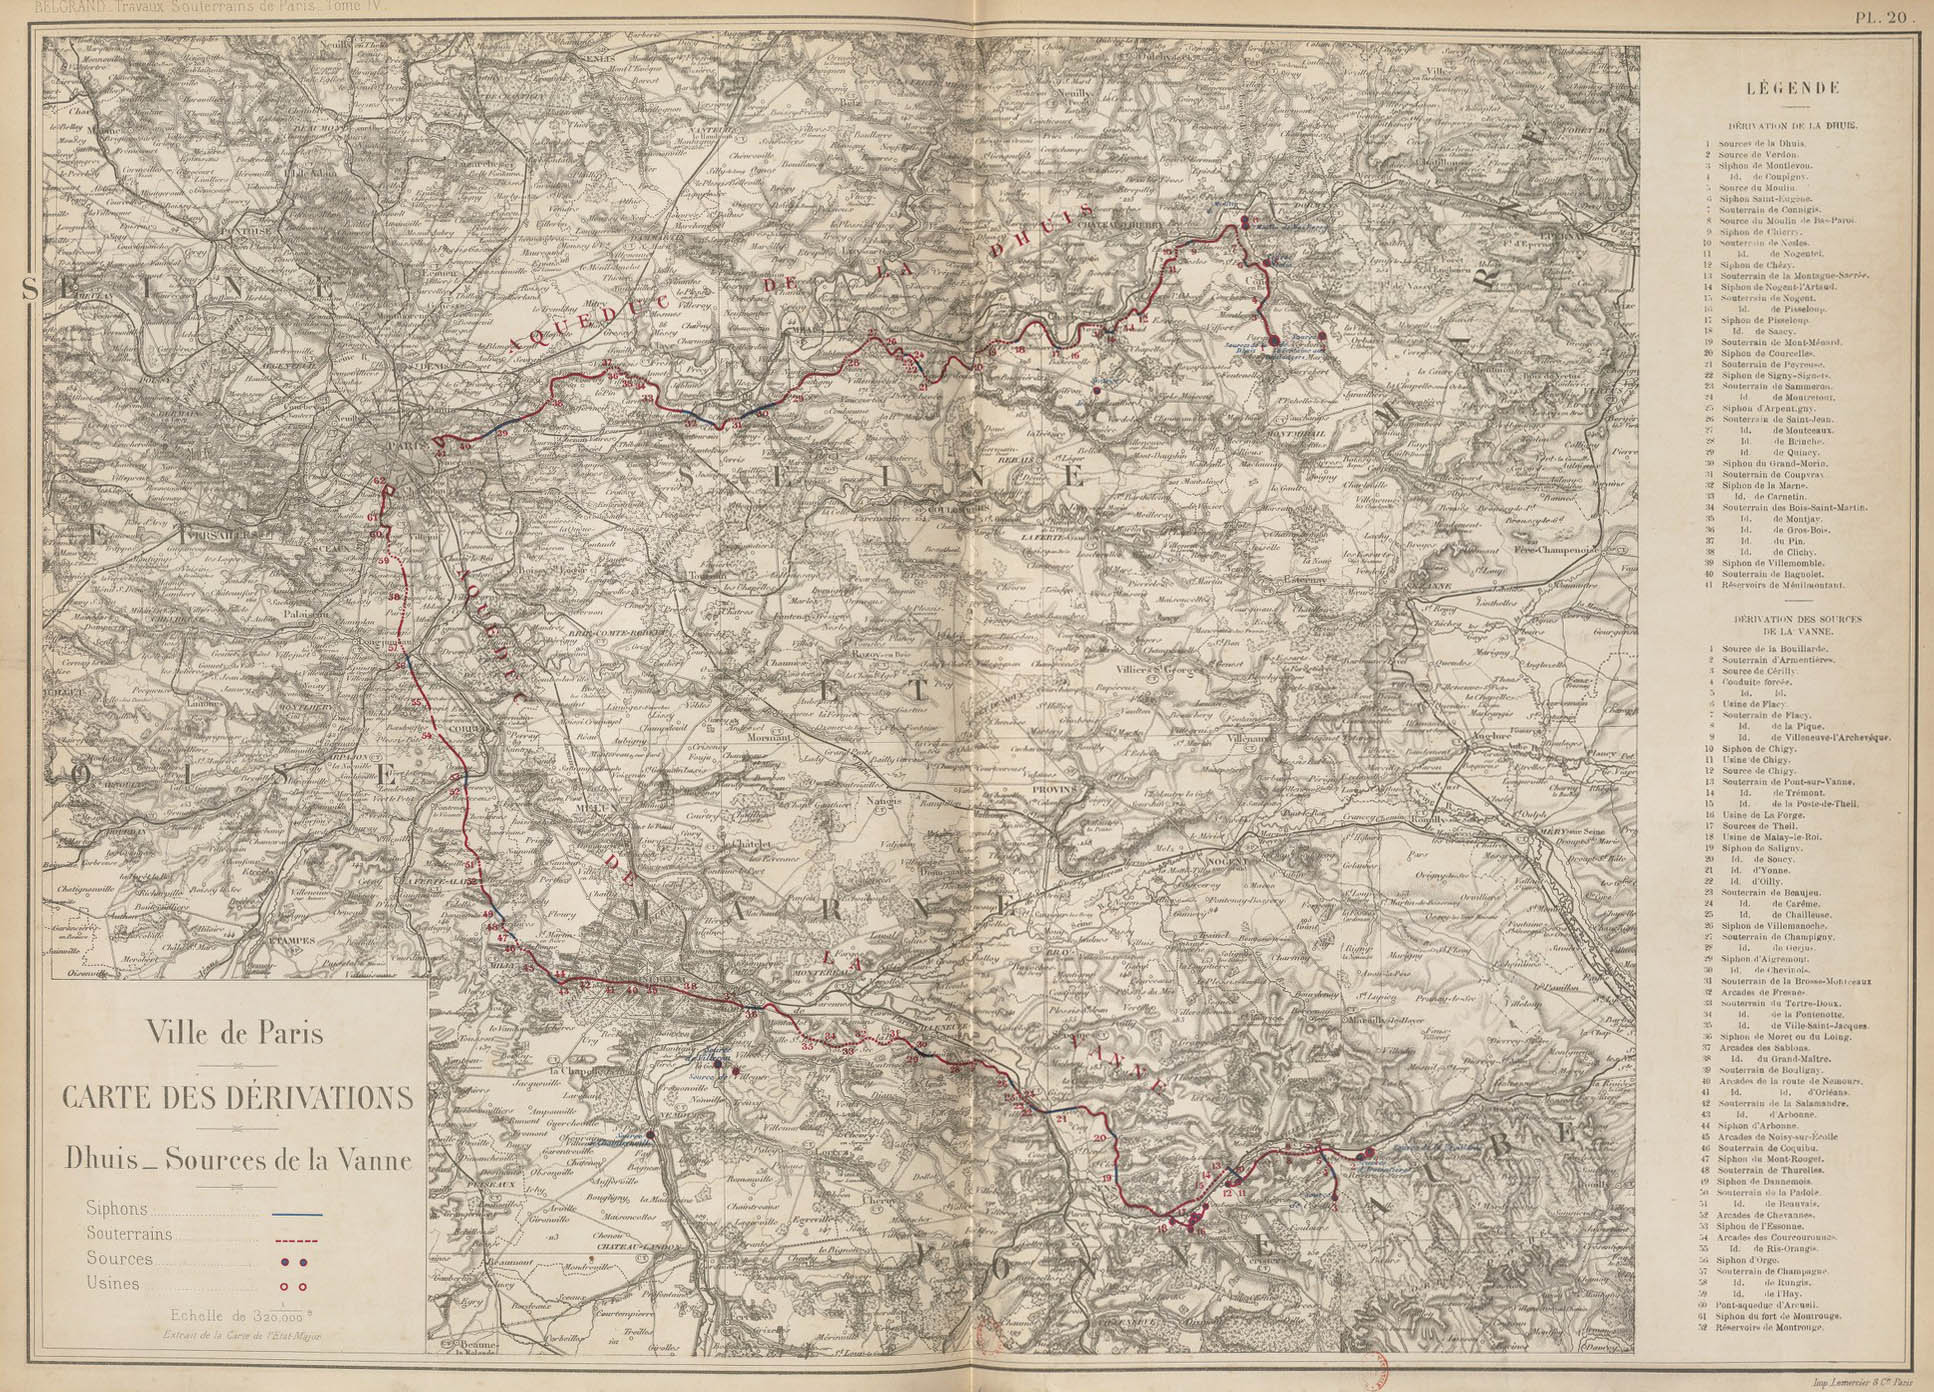 Tome IV, Carte des dérivations. Dhuis - Sources de la Vanne © Source gallica.bnf.fr / Bibliothèque nationale de France